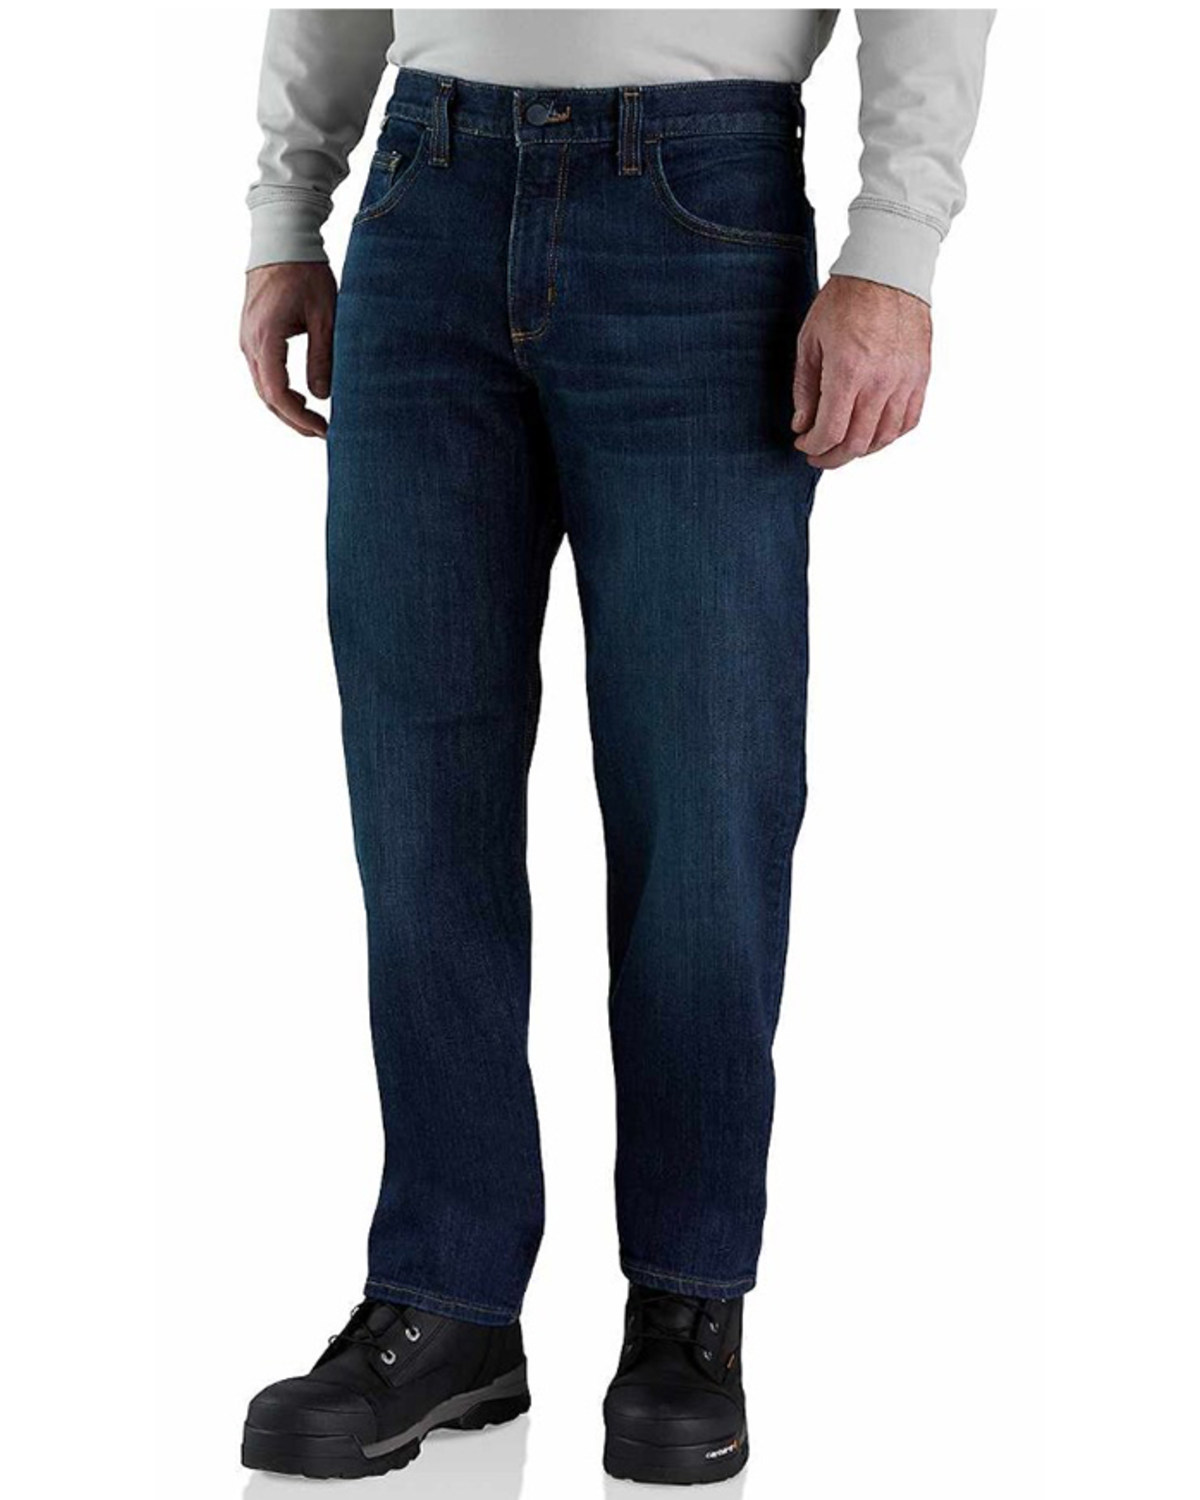 Carhartt Men's FR Rugged Flex Relaxed Fit Denim Jeans